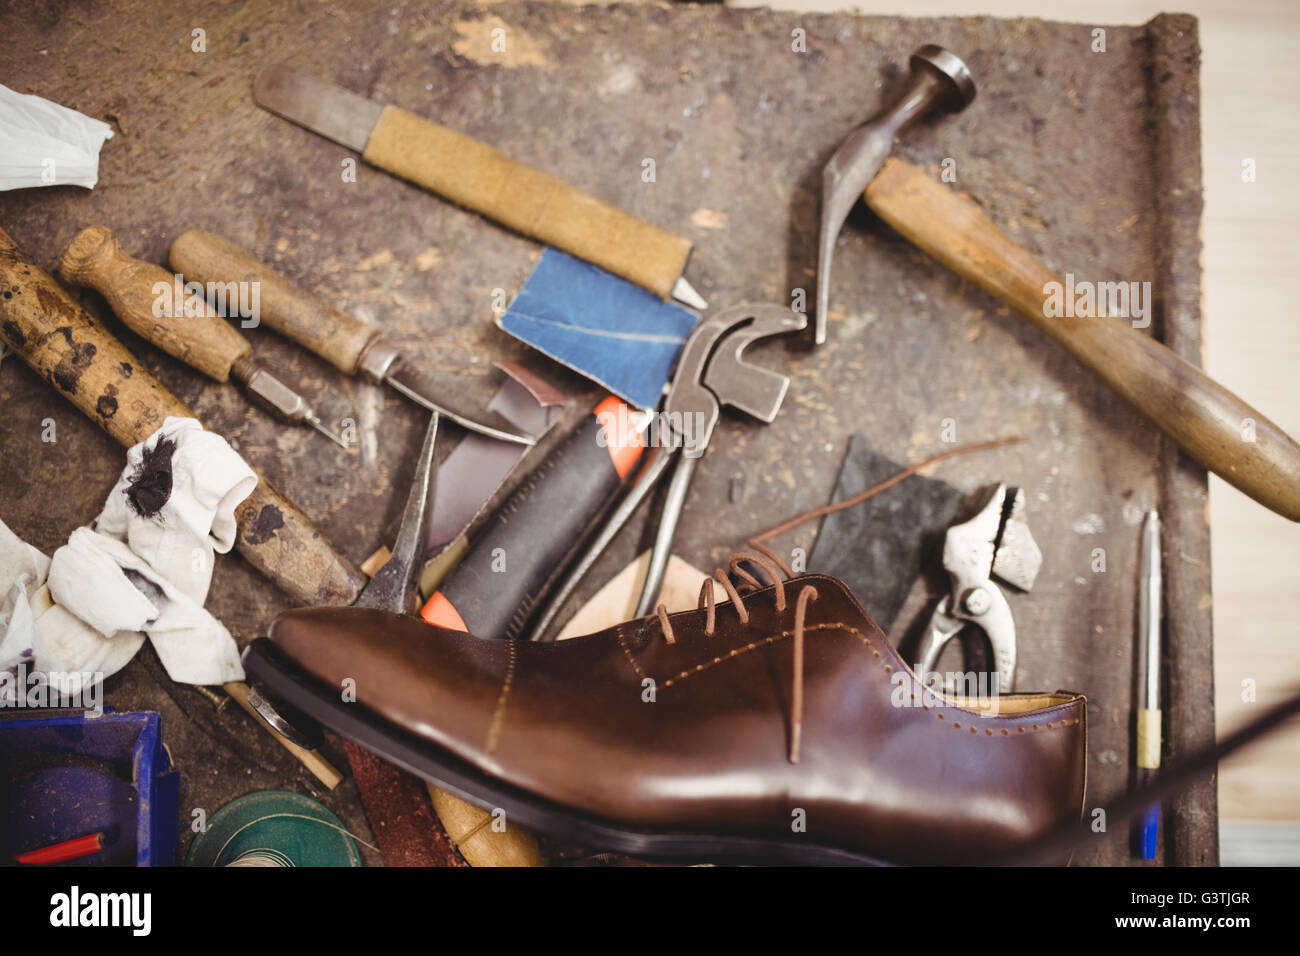 Outils de cordonnier et une chaussure sur une table Banque D'Images